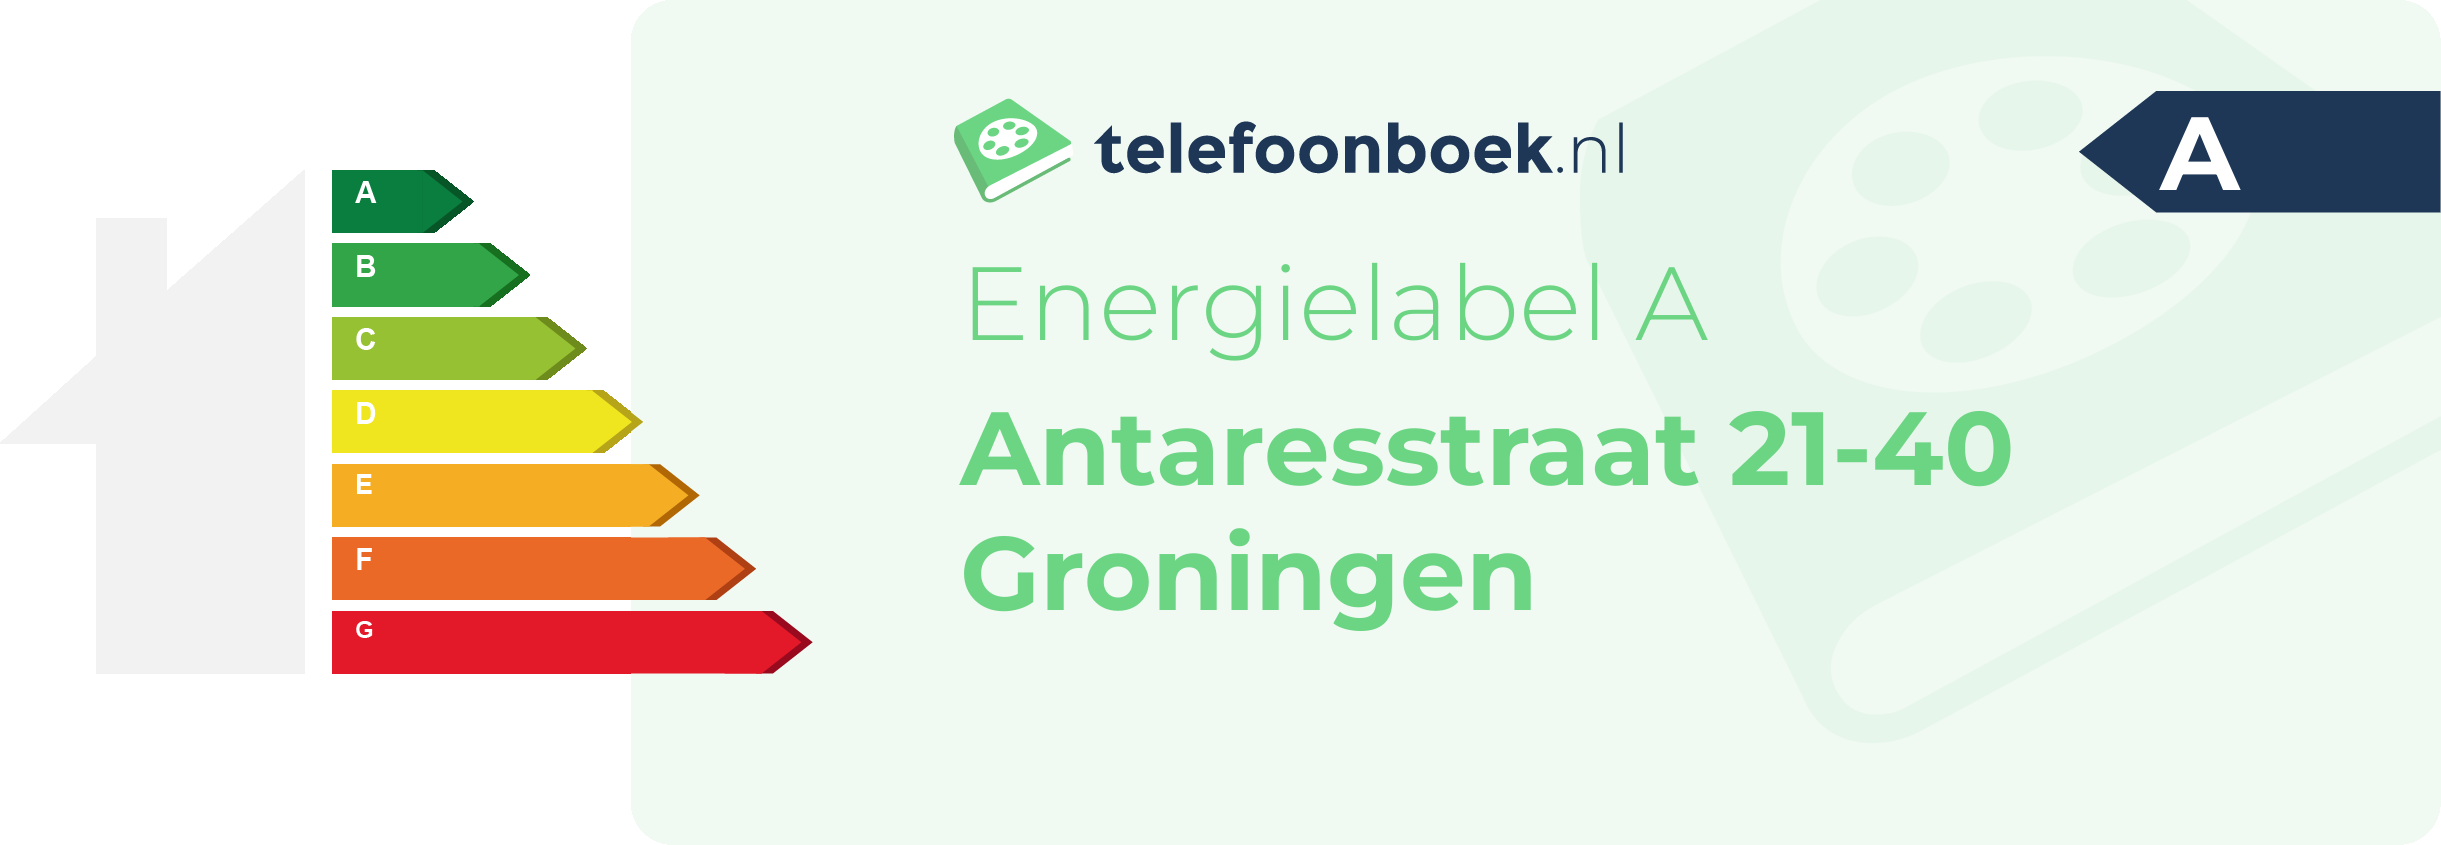 Energielabel Antaresstraat 21-40 Groningen